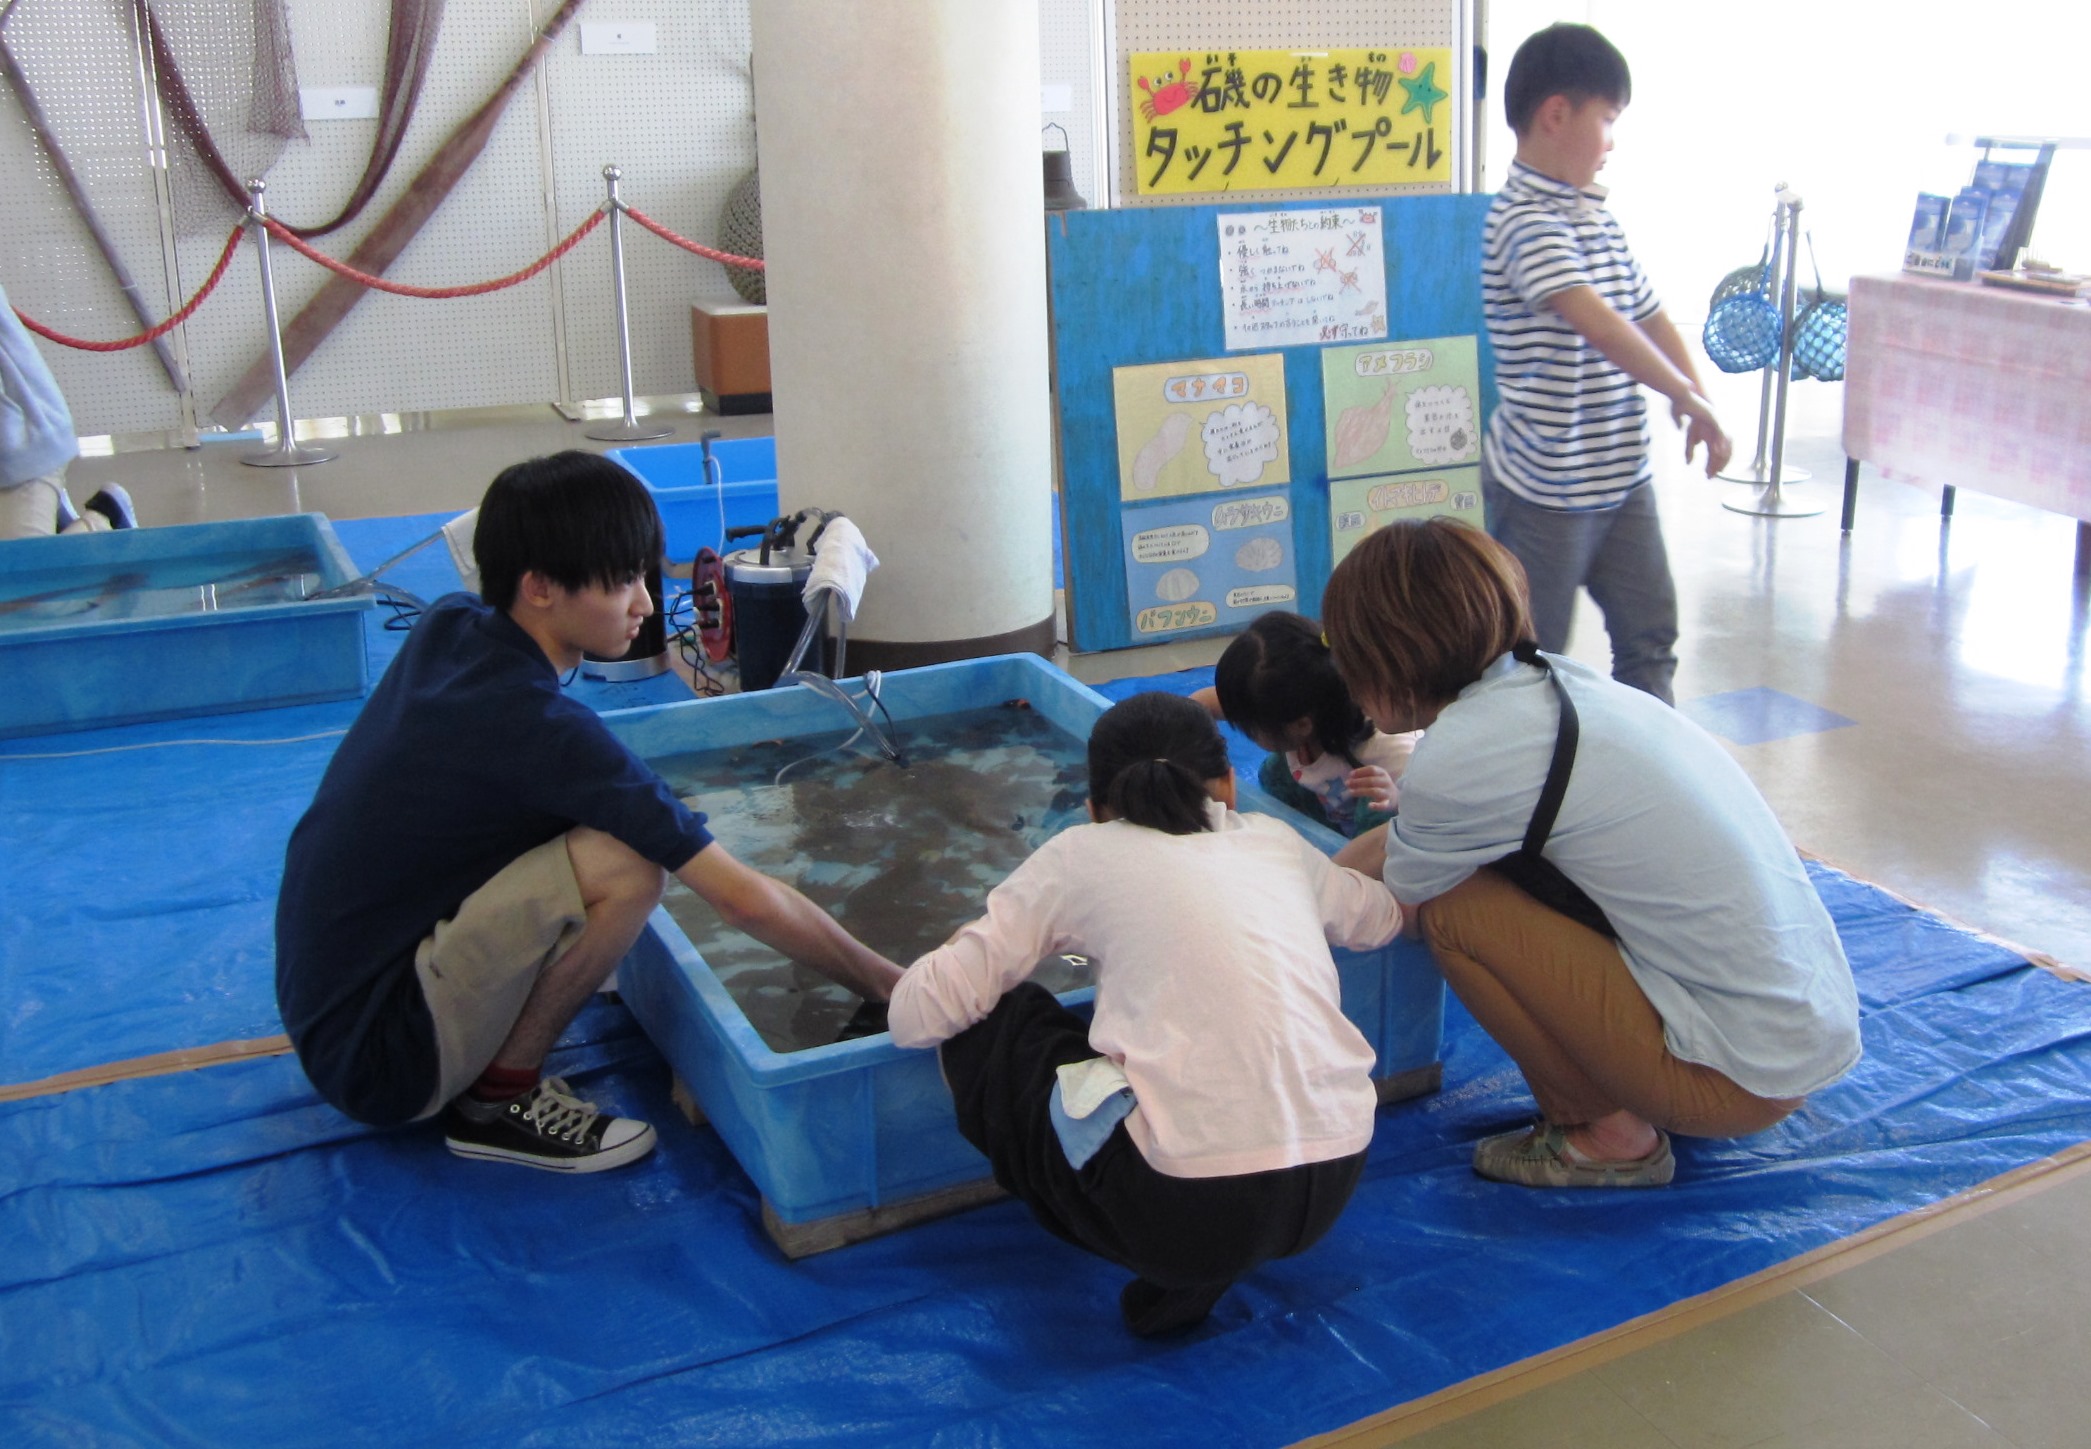 銚子ポートタワー 展示ホールで開催される多種多様なイベント